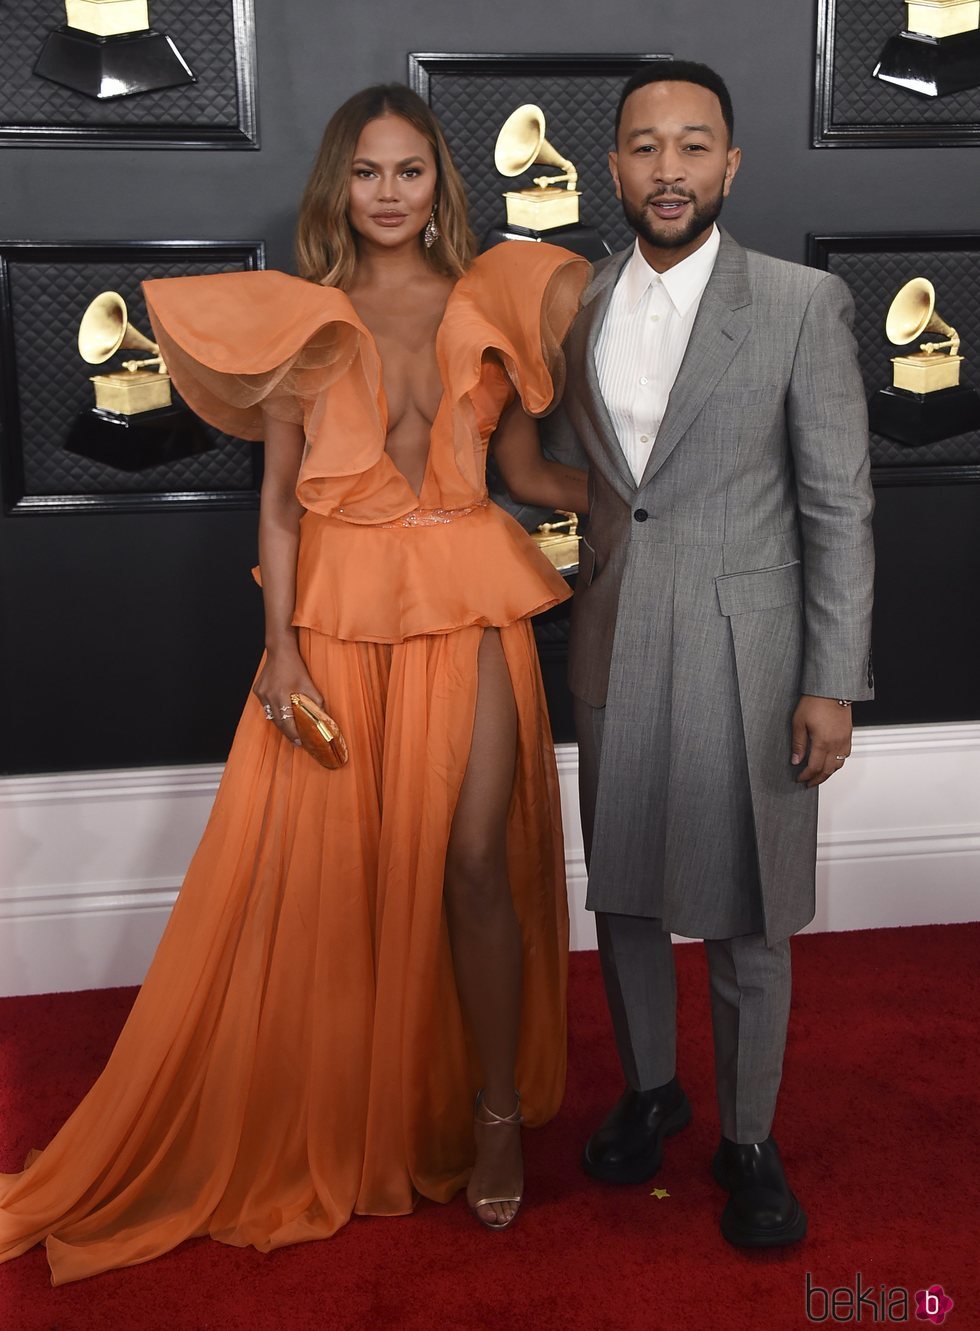 Chrissy Teigen y John Legend en la alfombra roja de los Premios Grammy 2020